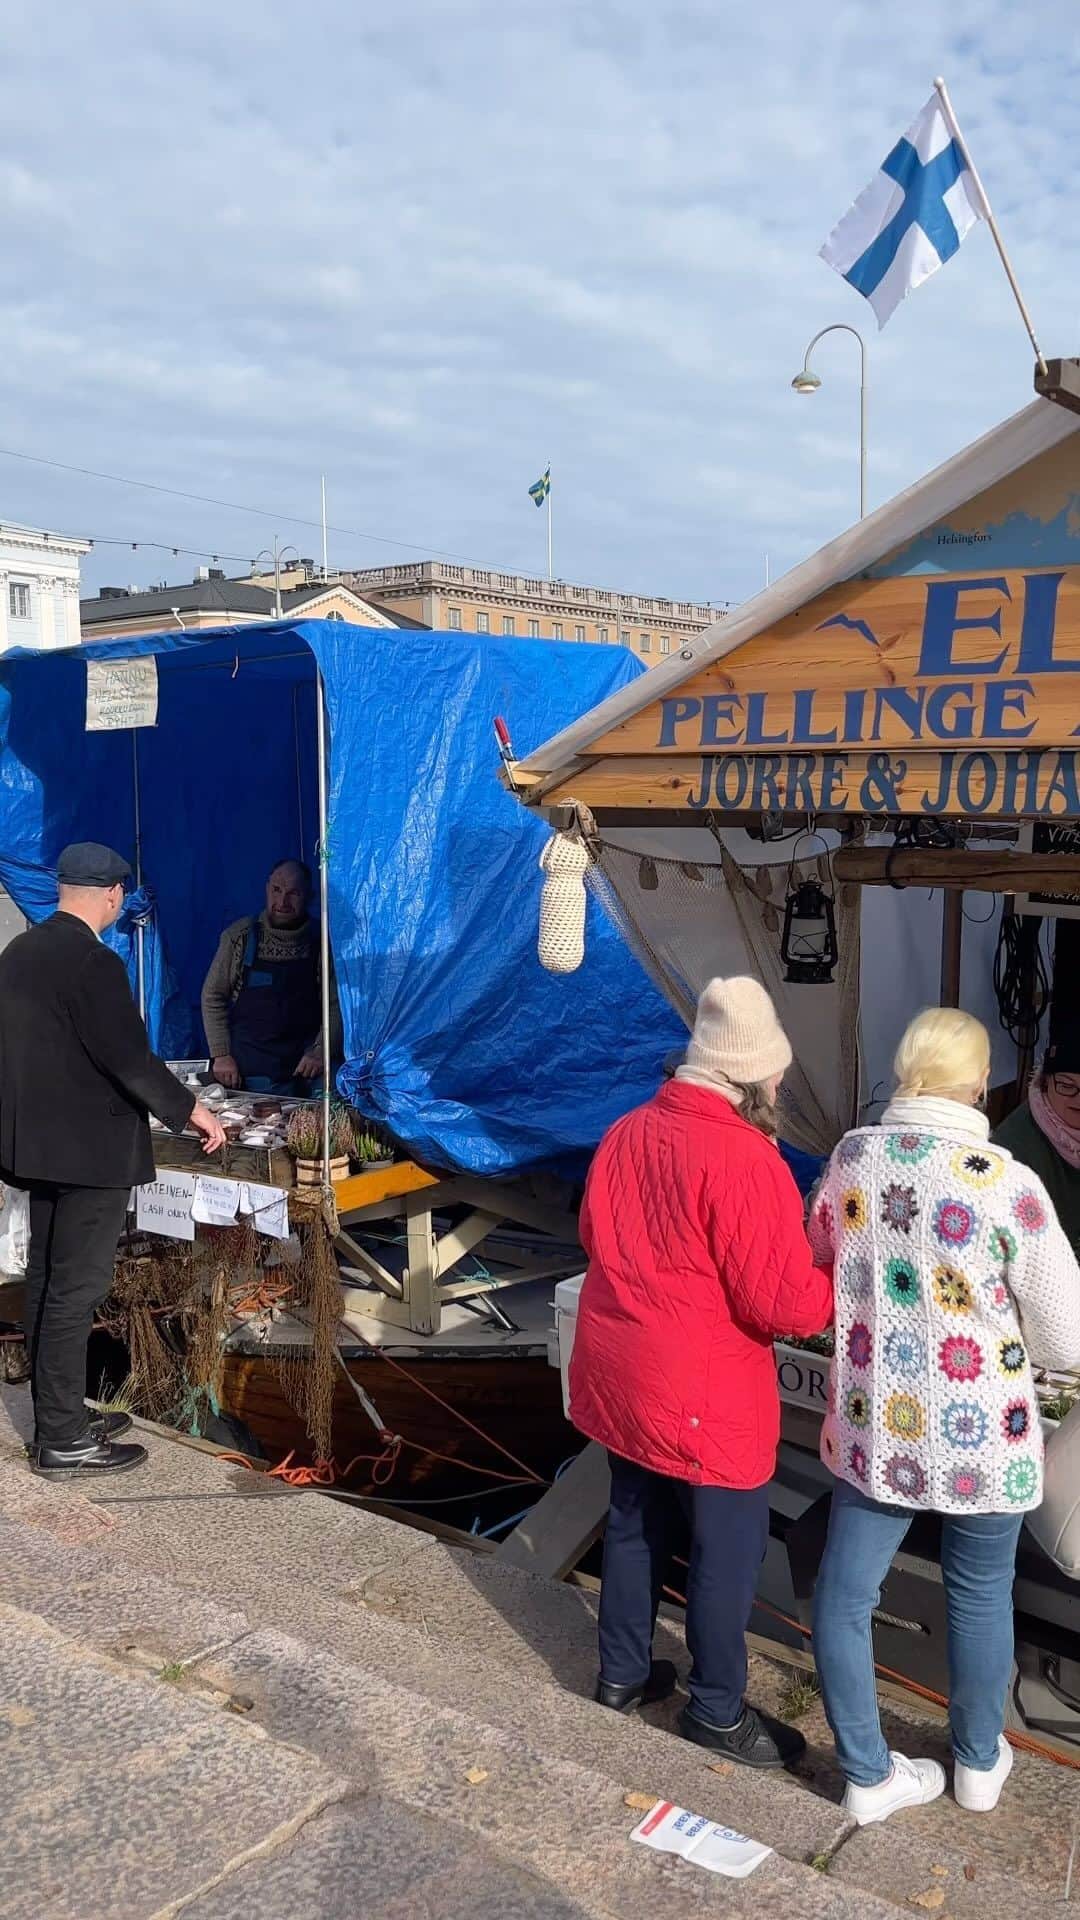 フィンランド政府観光局のインスタグラム：「ヘルシンキで昨日から始まった毎秋恒例のバルトニシン市に行って来ました。🐟　 このニシン市はヘルシンキ最古のイベントで、1743 年から続いています。魚屋さんがマーケット広場に集まり、釣り船から直接、あるいはマーケット広場の屋台で商品を販売します。販売されるのは、塩漬けニシン、ナナカマドの実からレッドペッパーまで様々なもの。マリネしたニシン、その他のおいしいマーケットフードなどです。シーフードだけでなく、おいしい群島黒パン、ラムウールのファッション製品や手工芸品も店頭に並びます。」